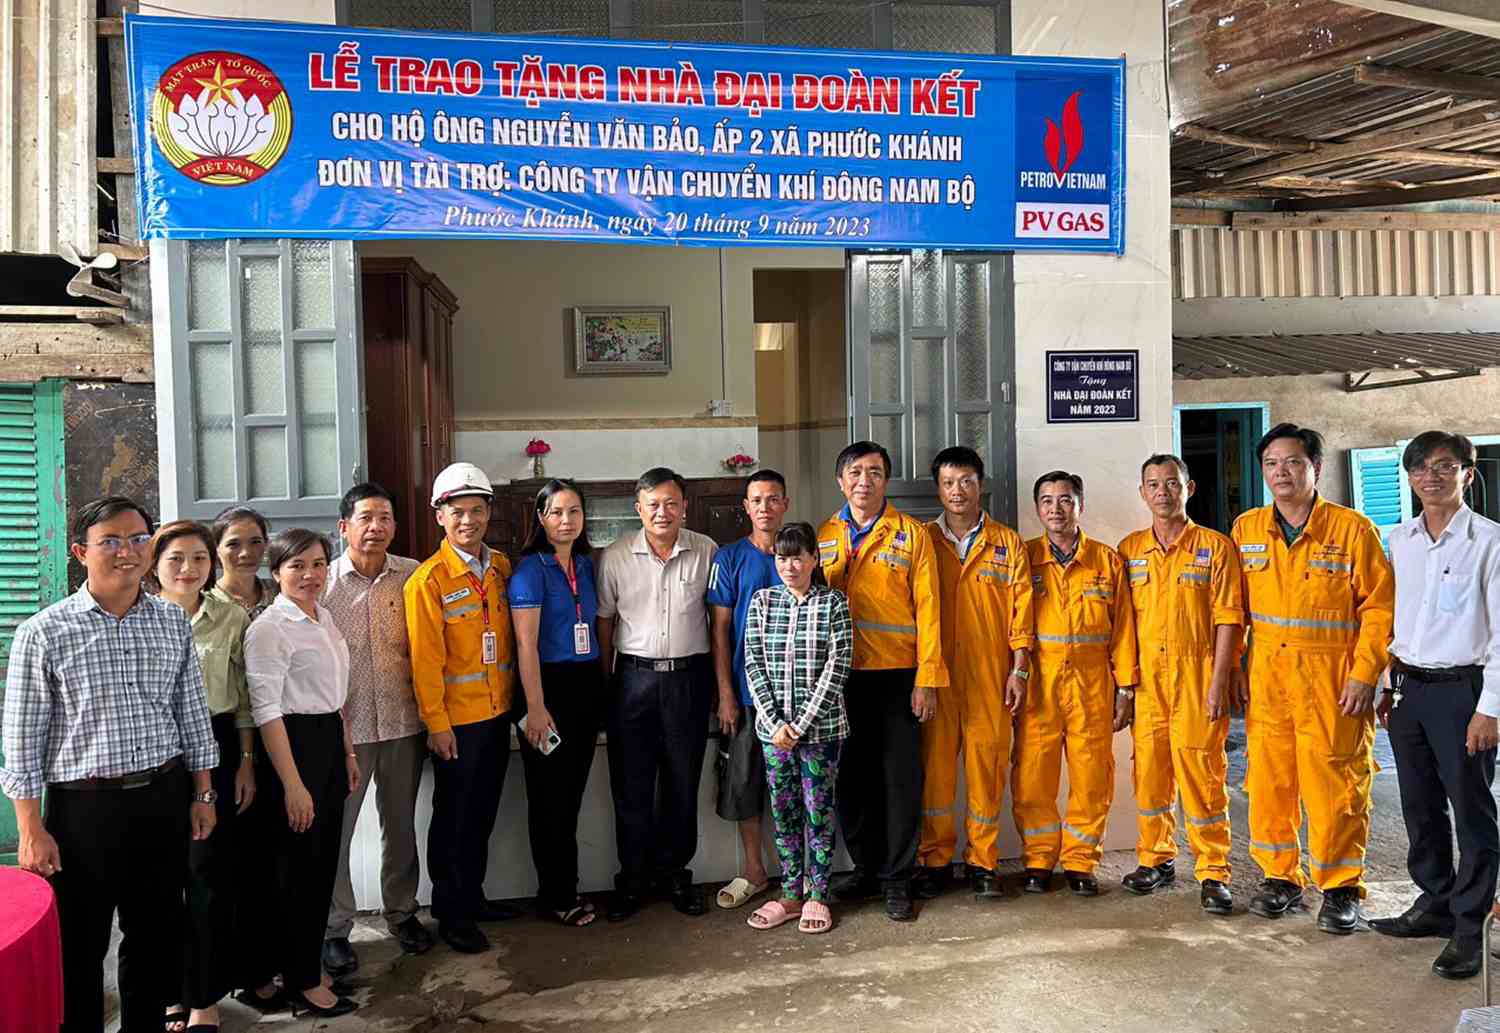 Công ty Vận chuyển Khí Đông Nam Bộ trao tặng nhà Đại đoàn kết tại huyện Nhơn Trạch, tỉnh Đồng Nai.